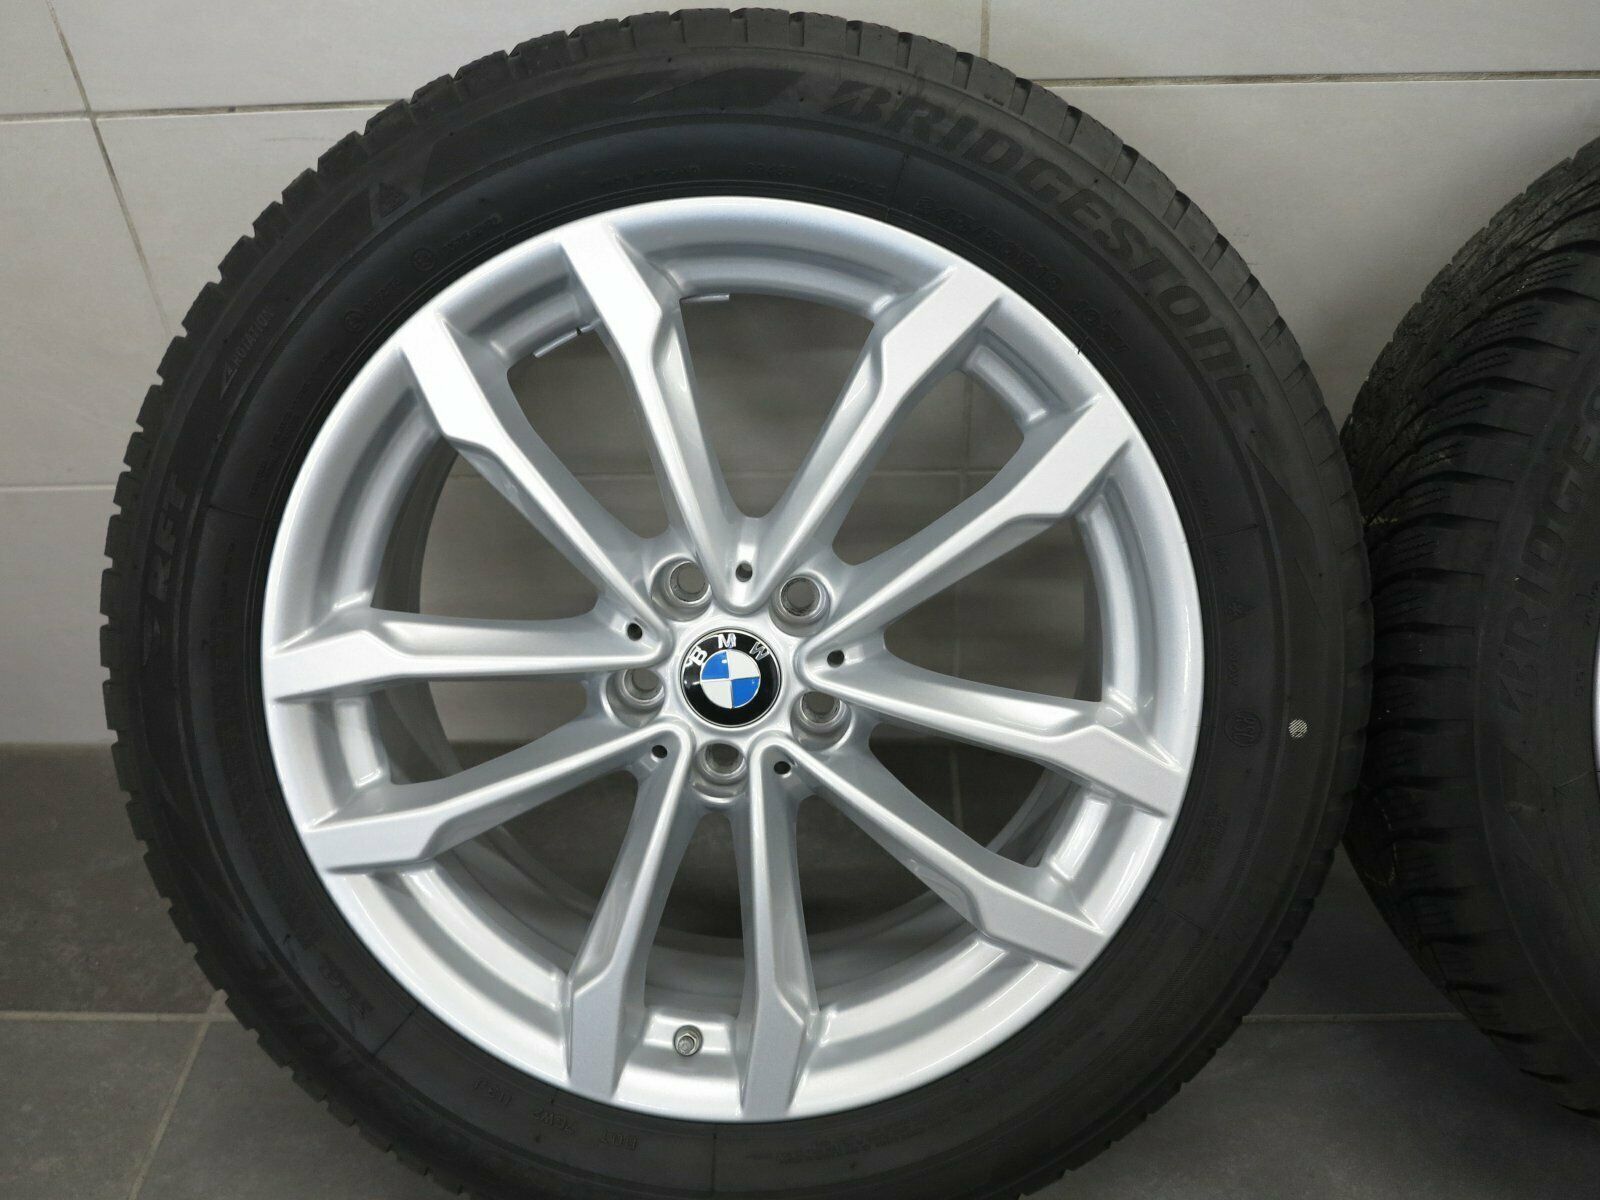 19 pouces roues d'hiver d'origine BMW X3 G01 X4 G02 691 6877325 pneus d'hiver